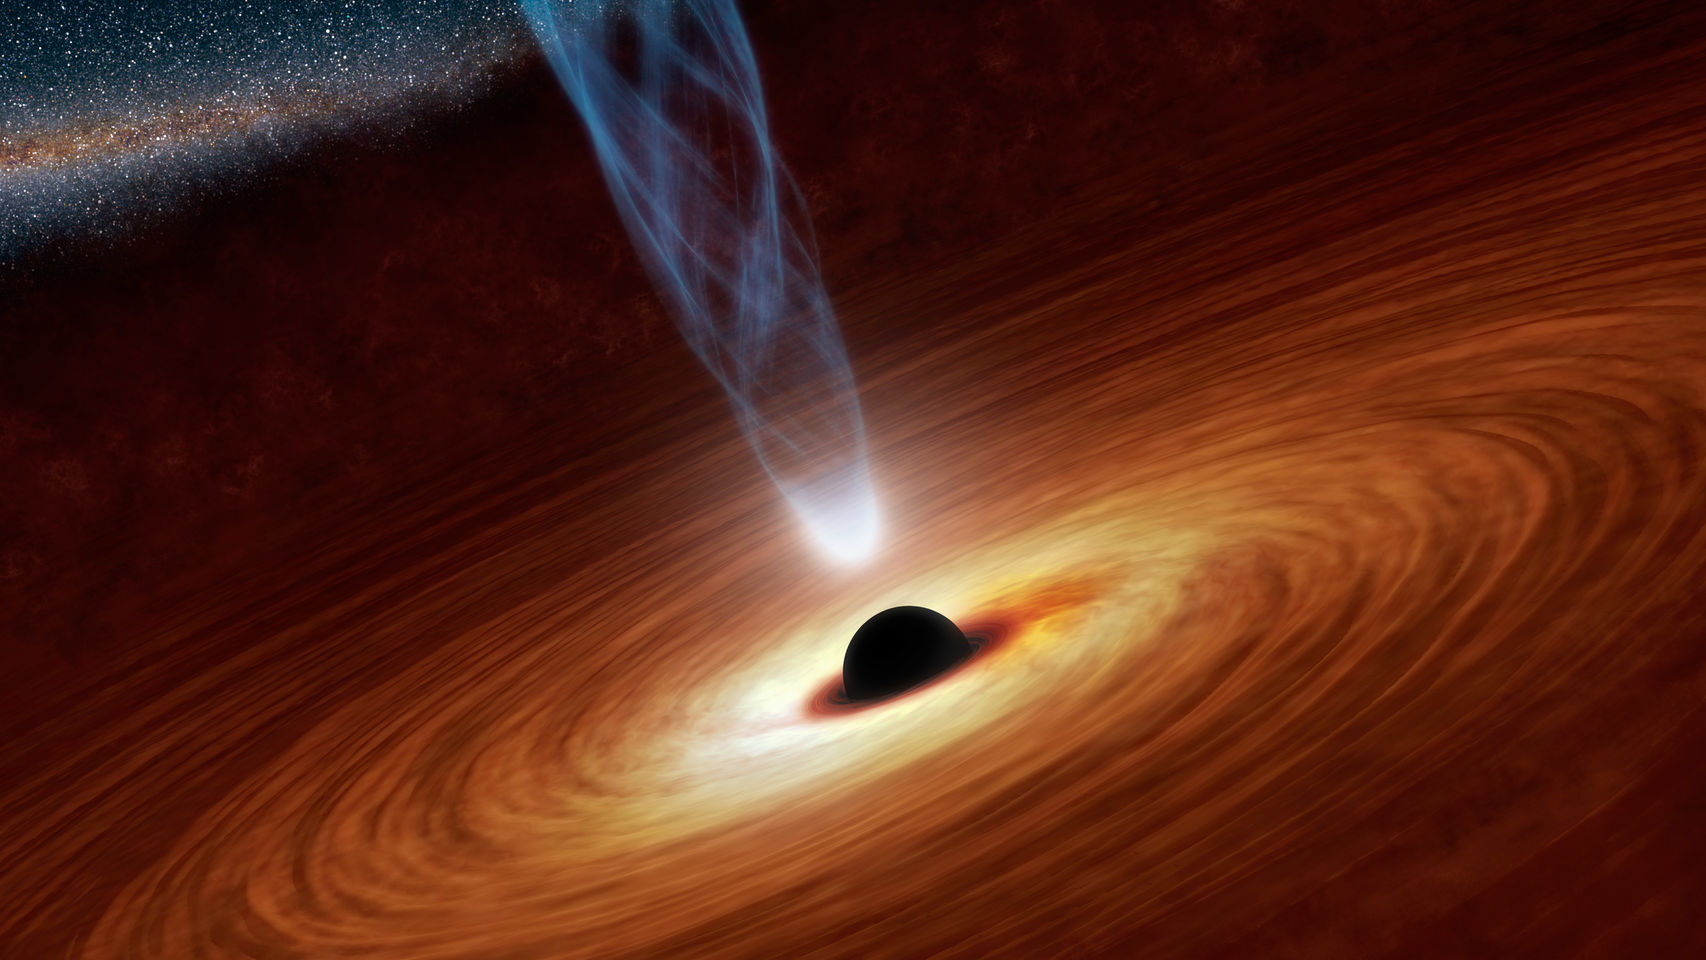 Recreación de un agujero negro